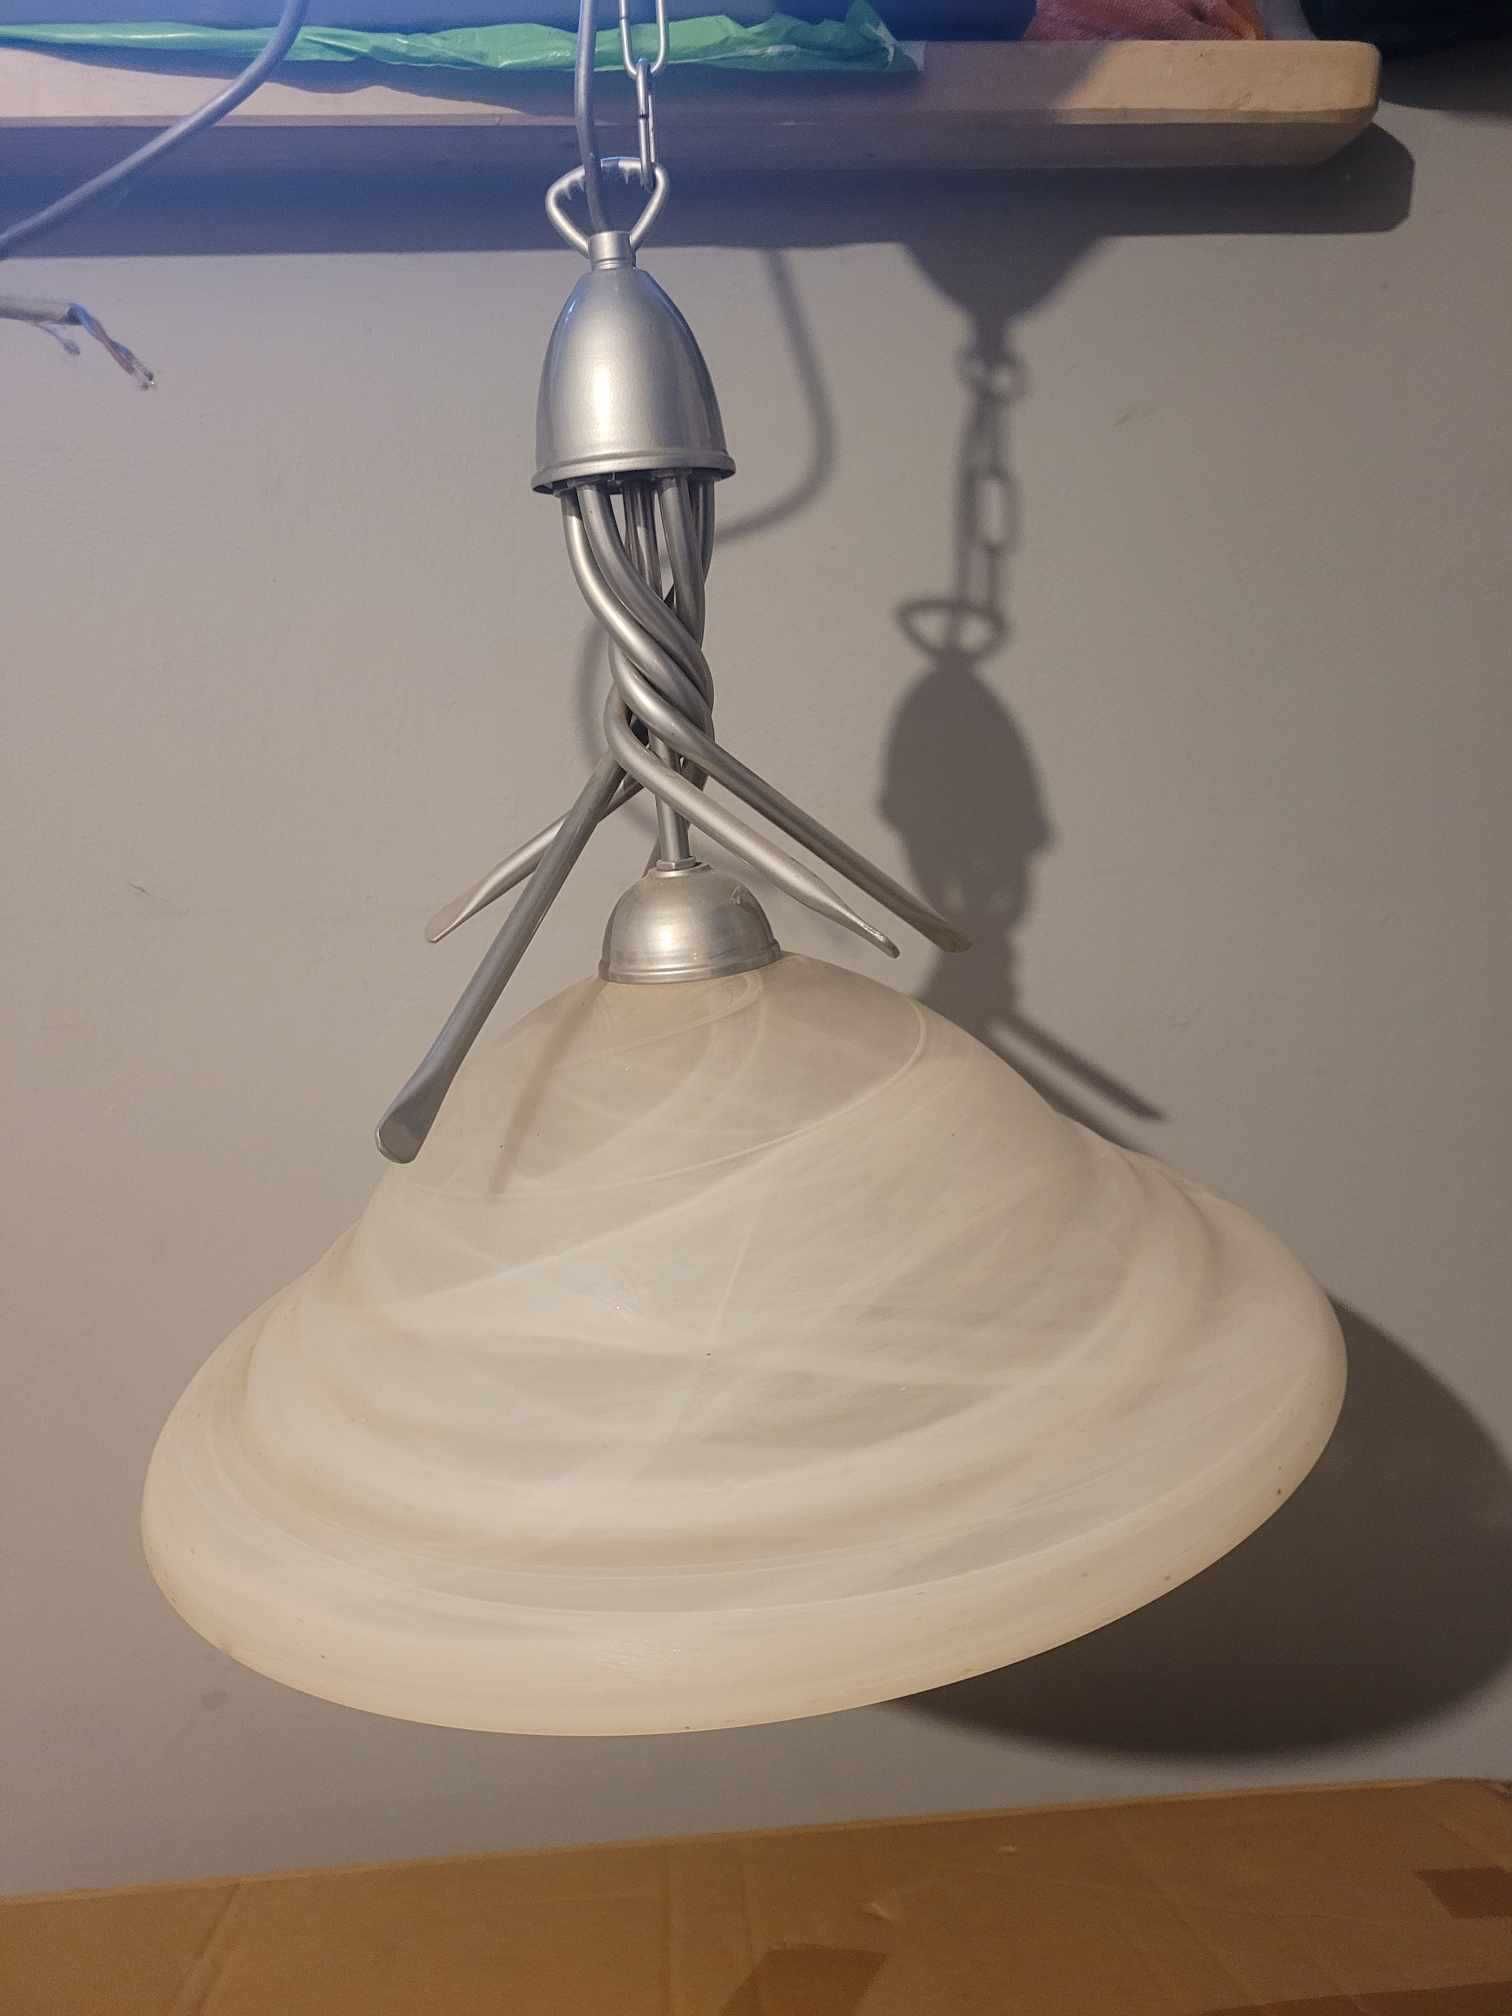 Lampa kuchenna, lampa wisząca, lampa szklana